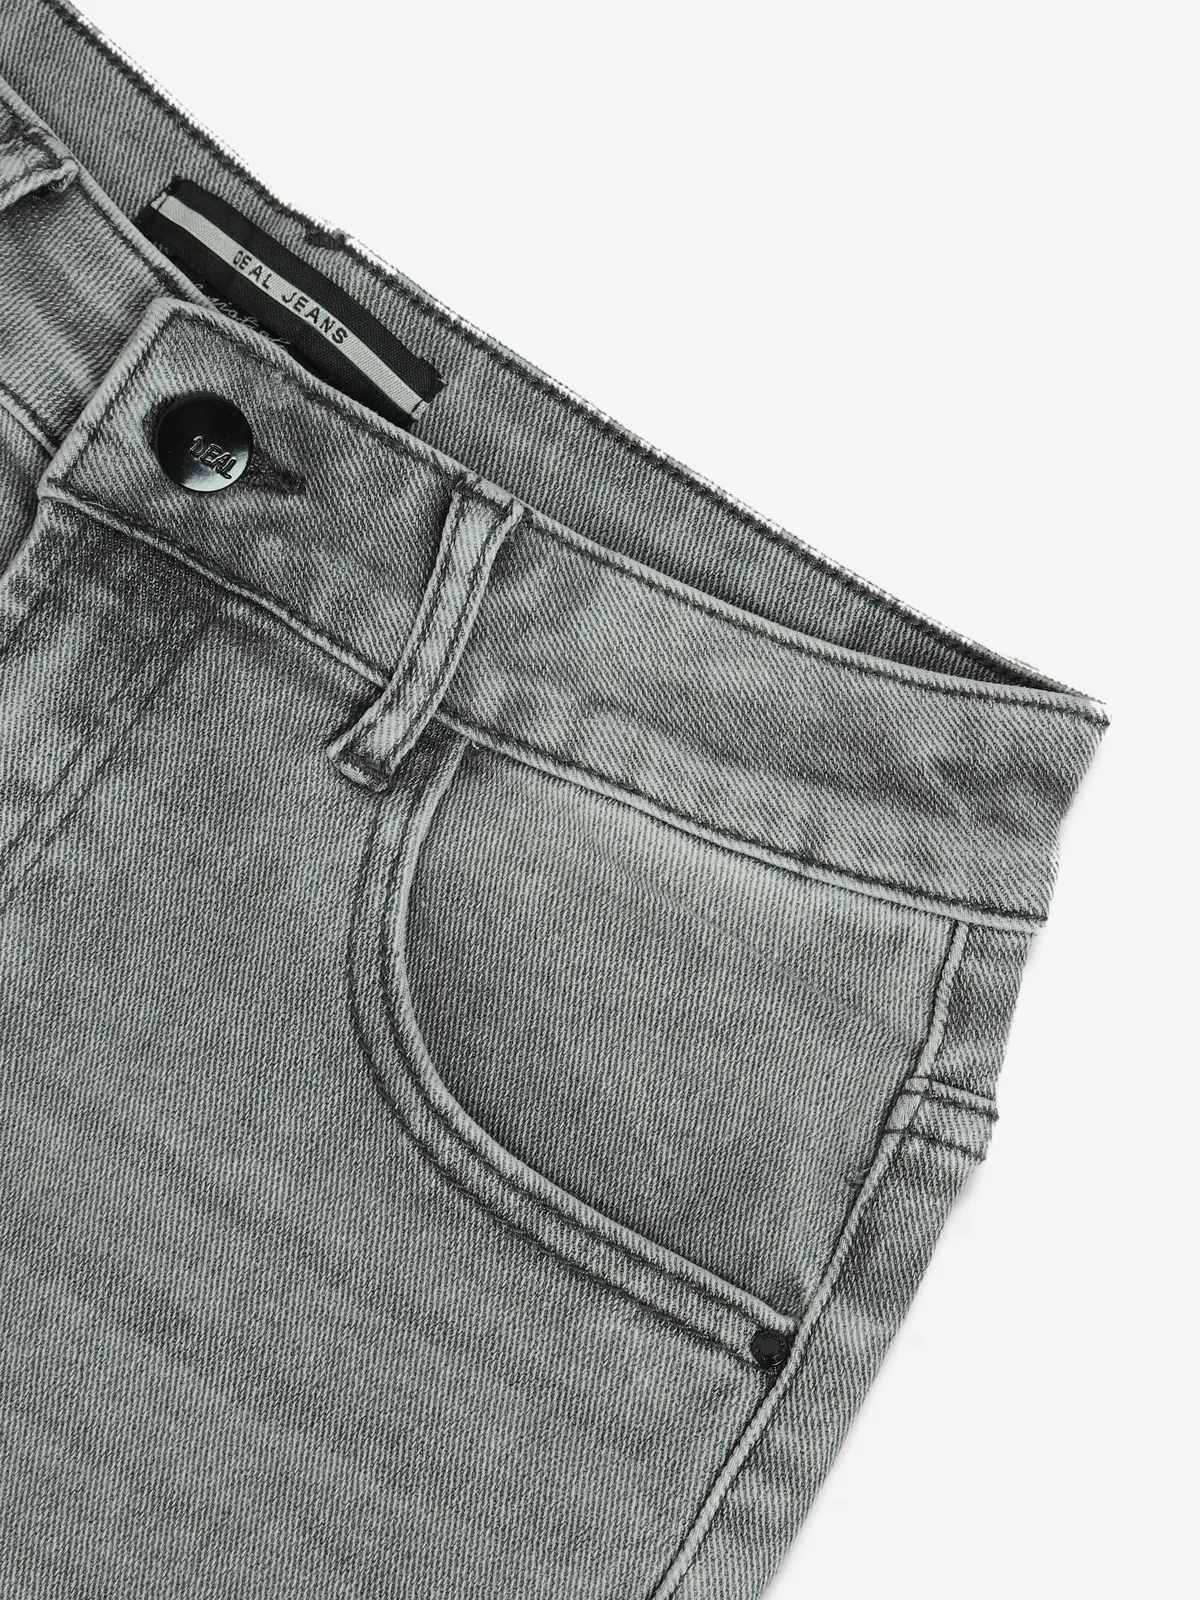 DEAL light grey washed denim shorts